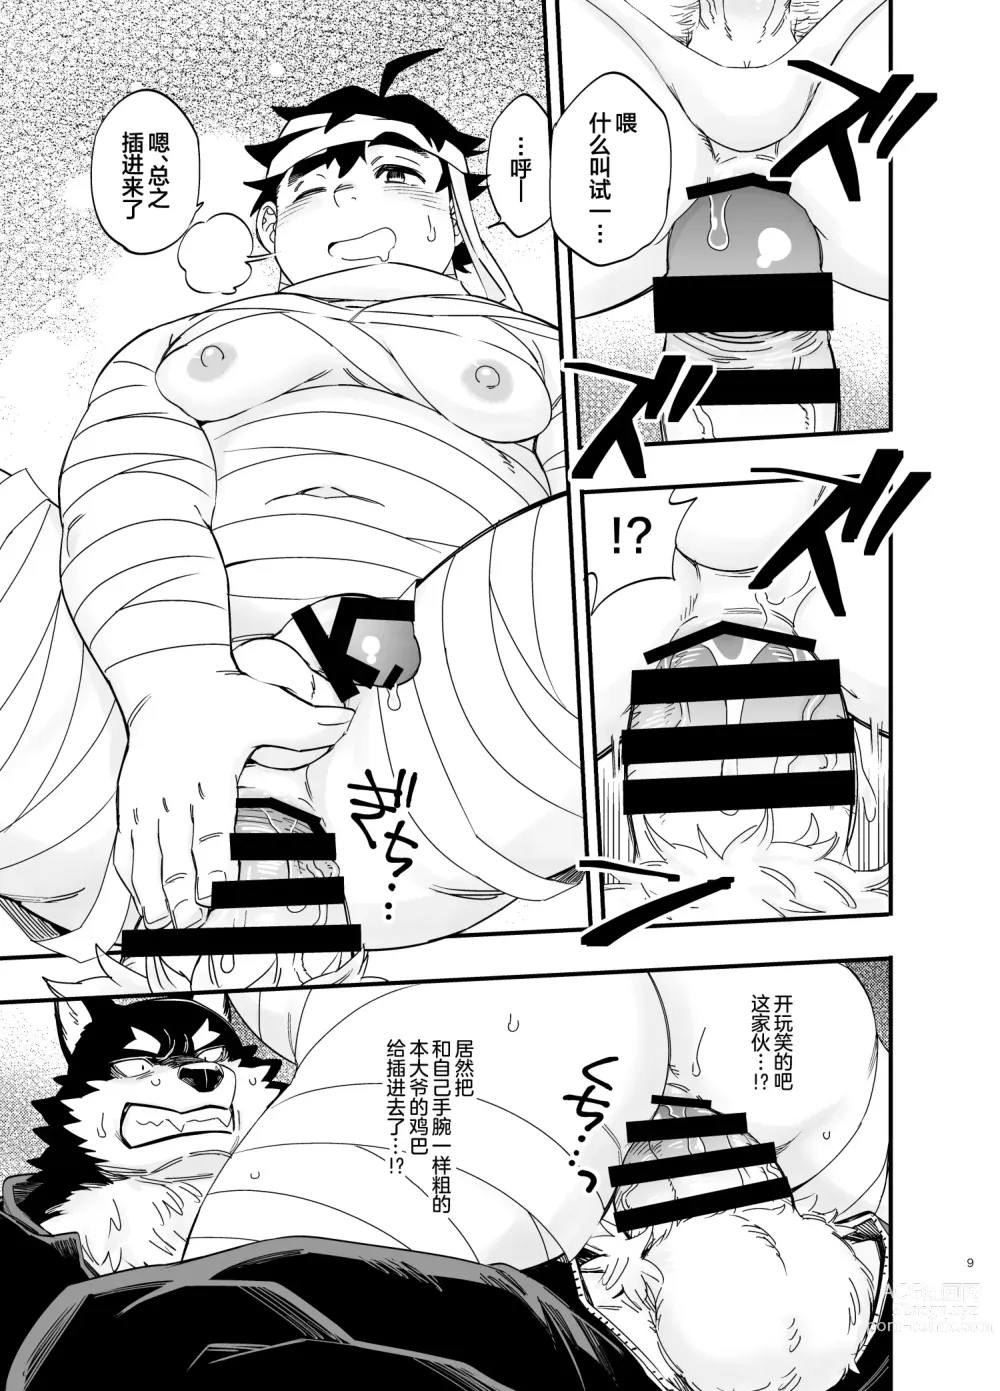 Page 10 of manga オオカミなんかこわくない！